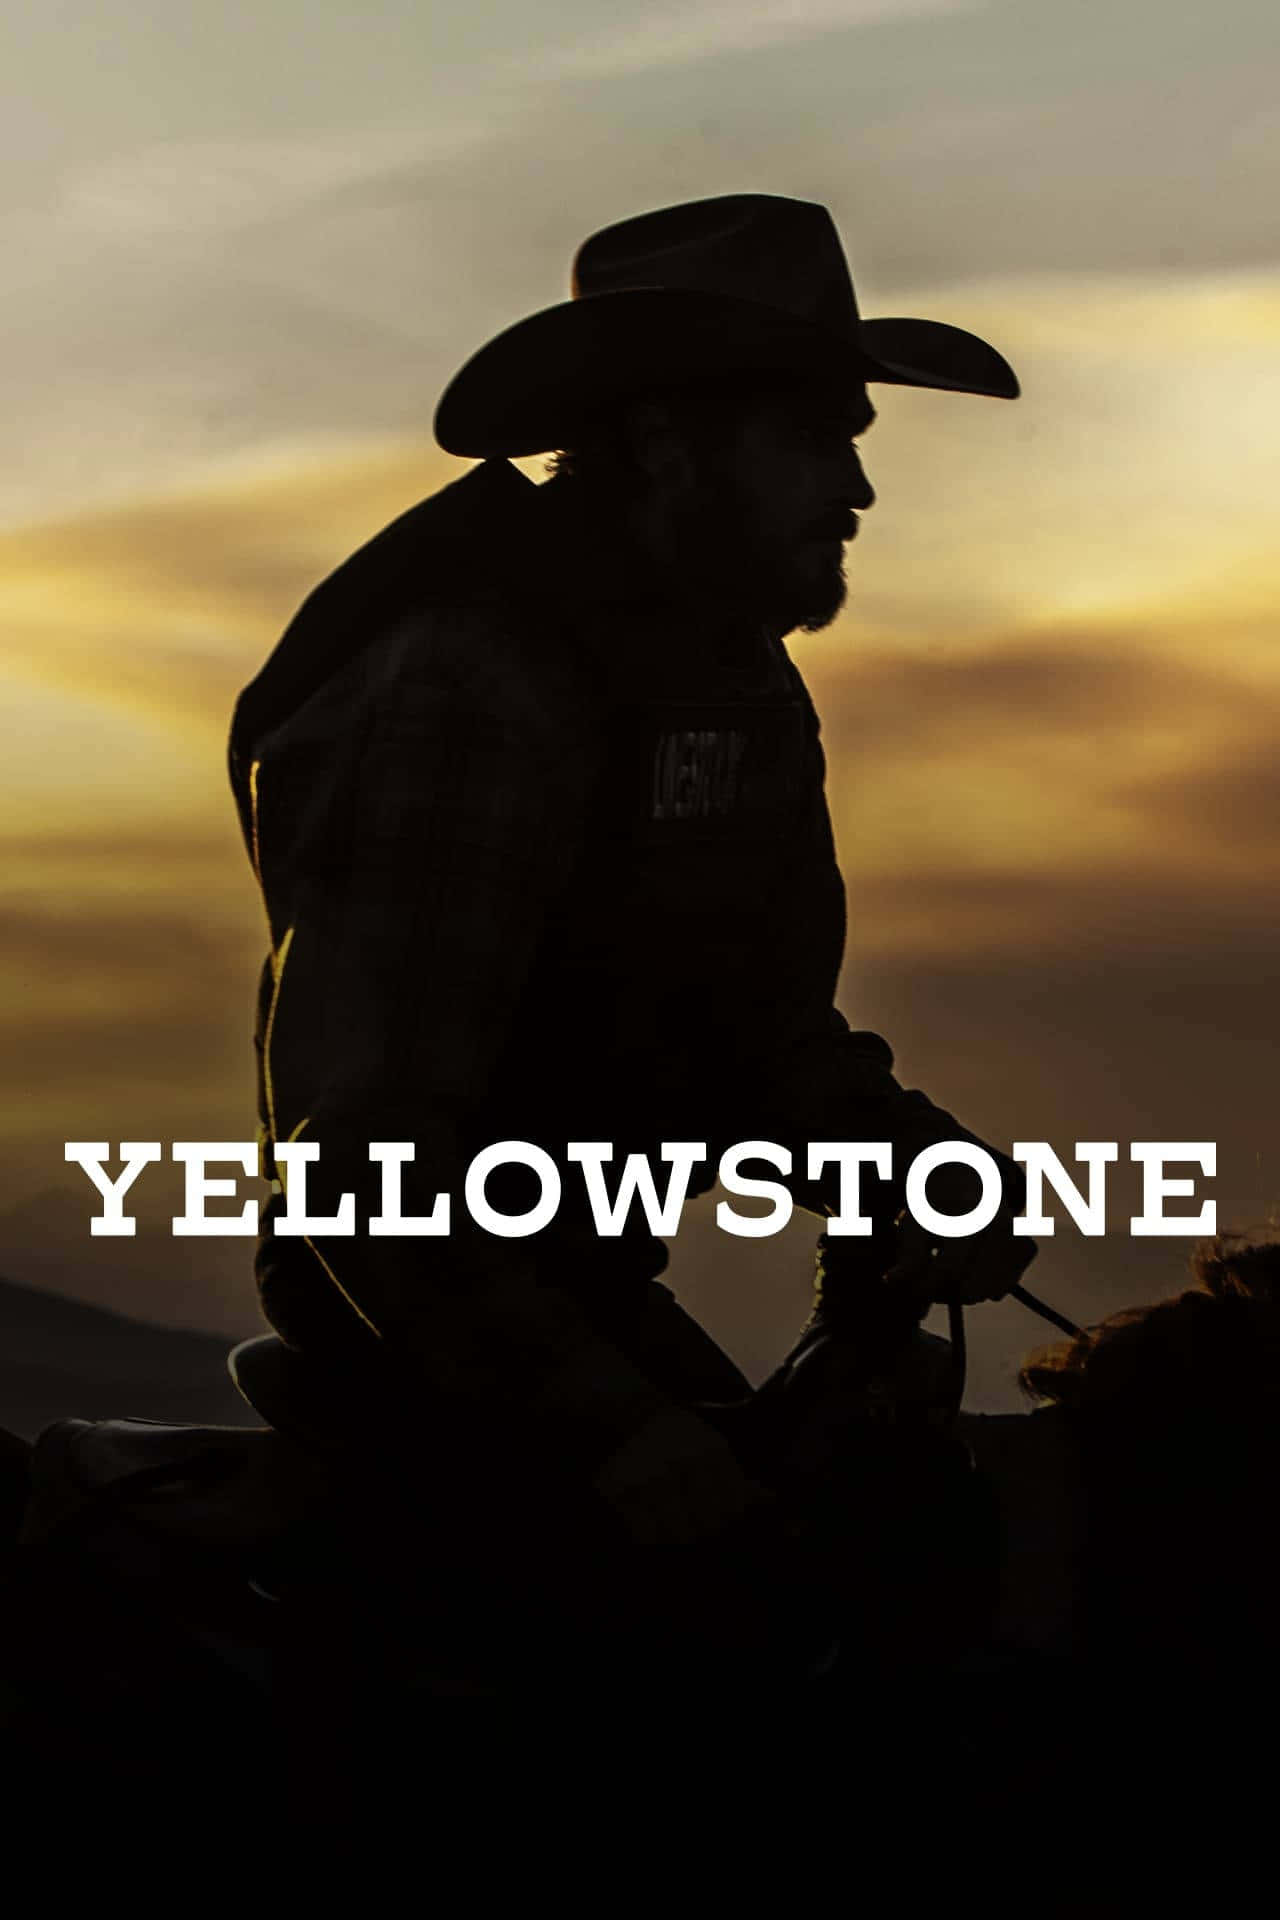 Fondode Pantalla De Cowboy Con El Título Del Programa Yellowstone.